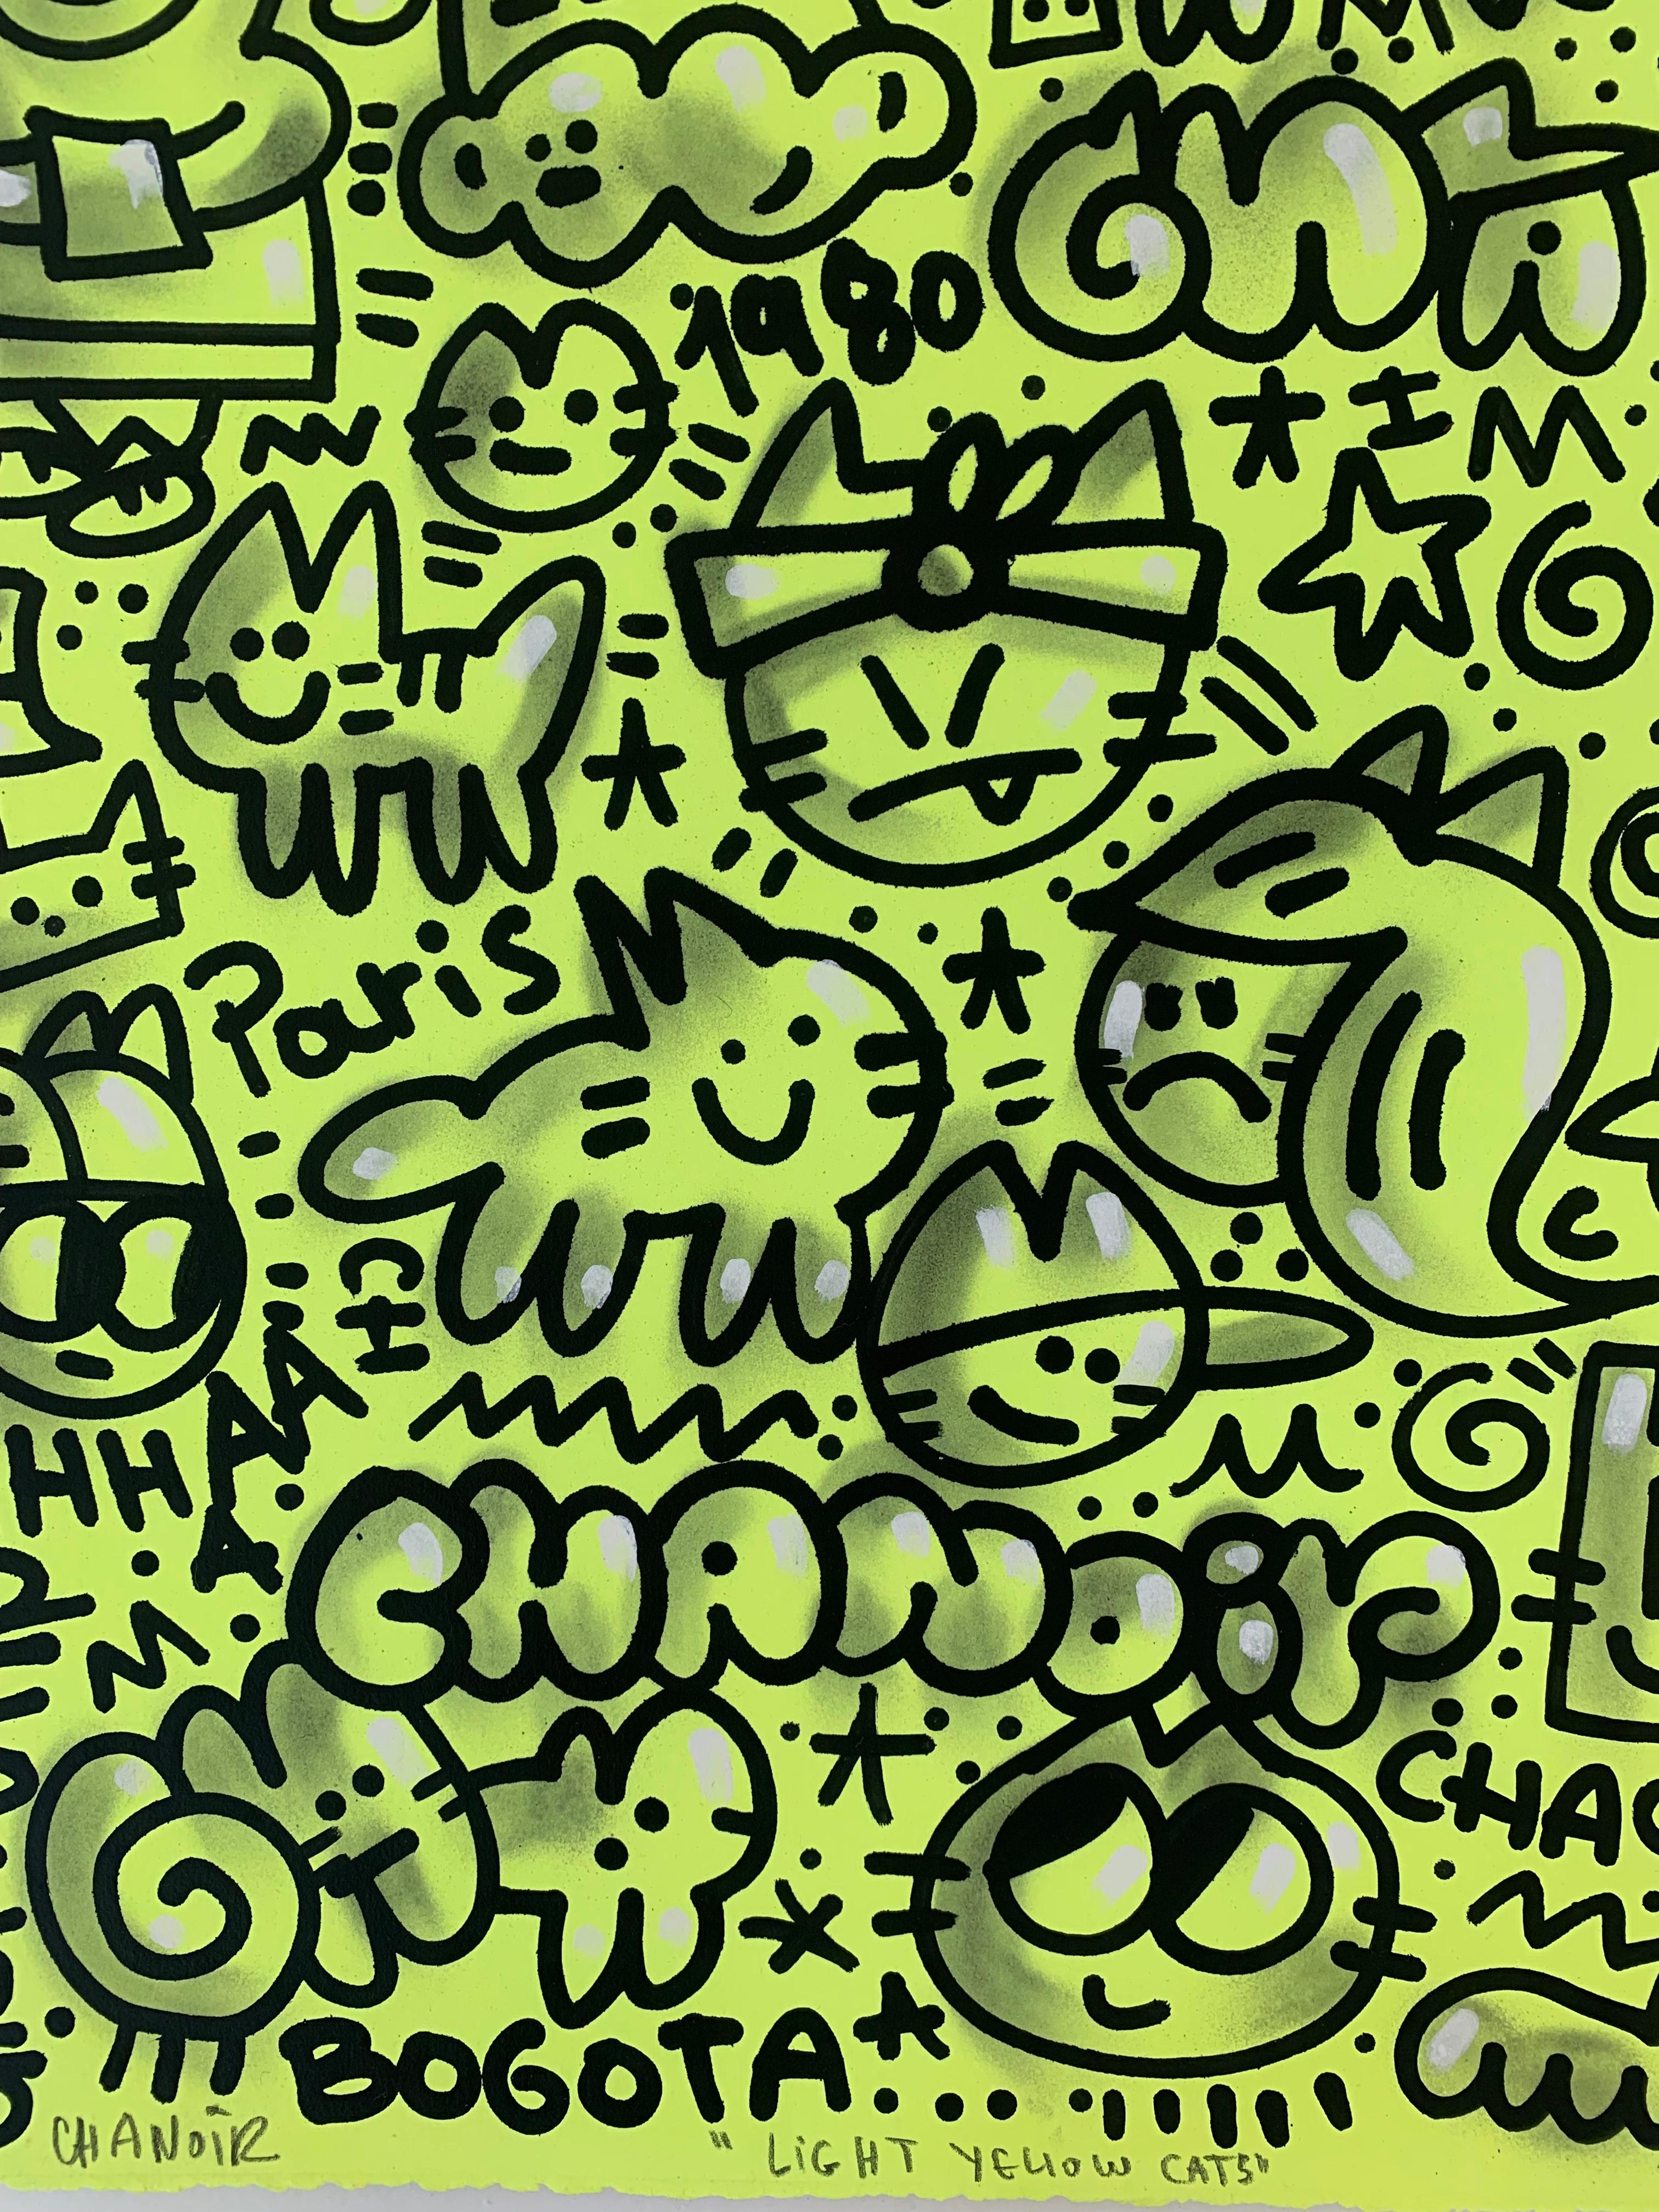 LIGHT YELLOW CATS von CHANOIR, französischer Stadtkünstler, Acryl und Sprühfarbe auf Papier (Streetart), Mixed Media Art, von Chanoir